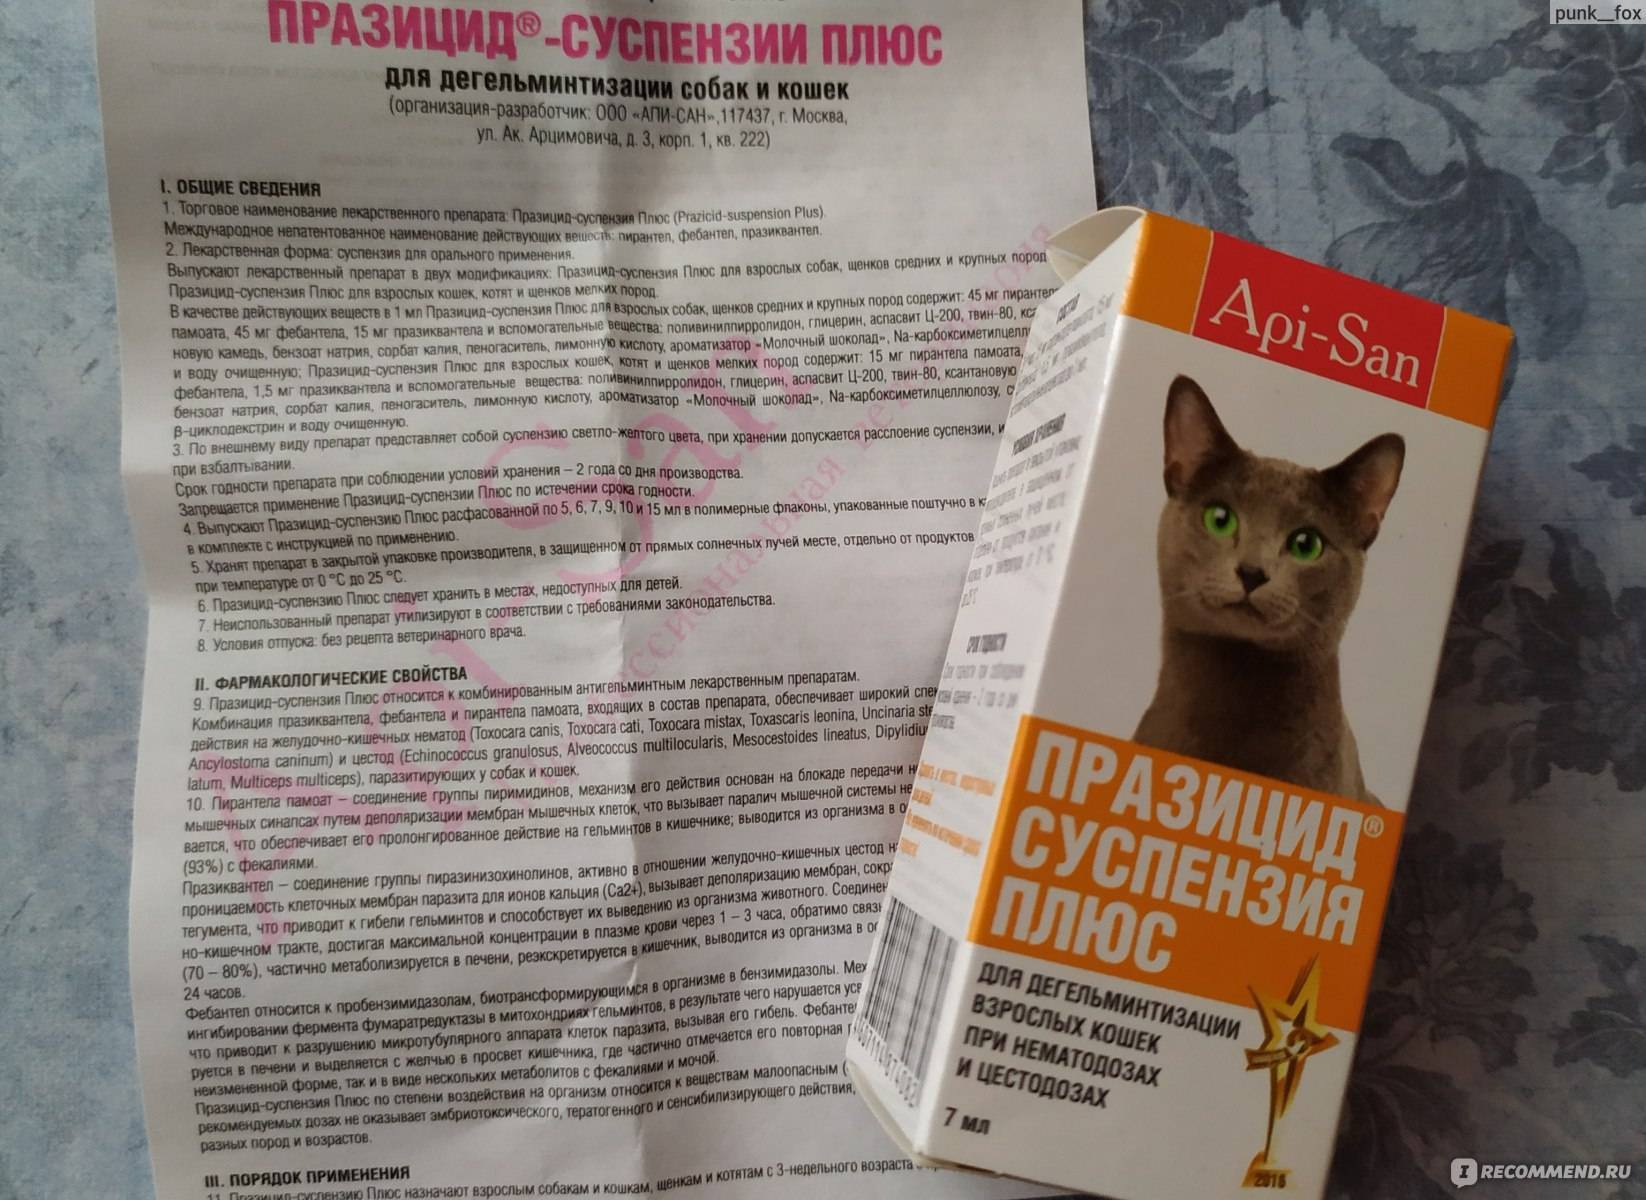 Средство от всех видов паразитов празицид суспензия плюс, для лечения кошек: с инструкцией и отзывами